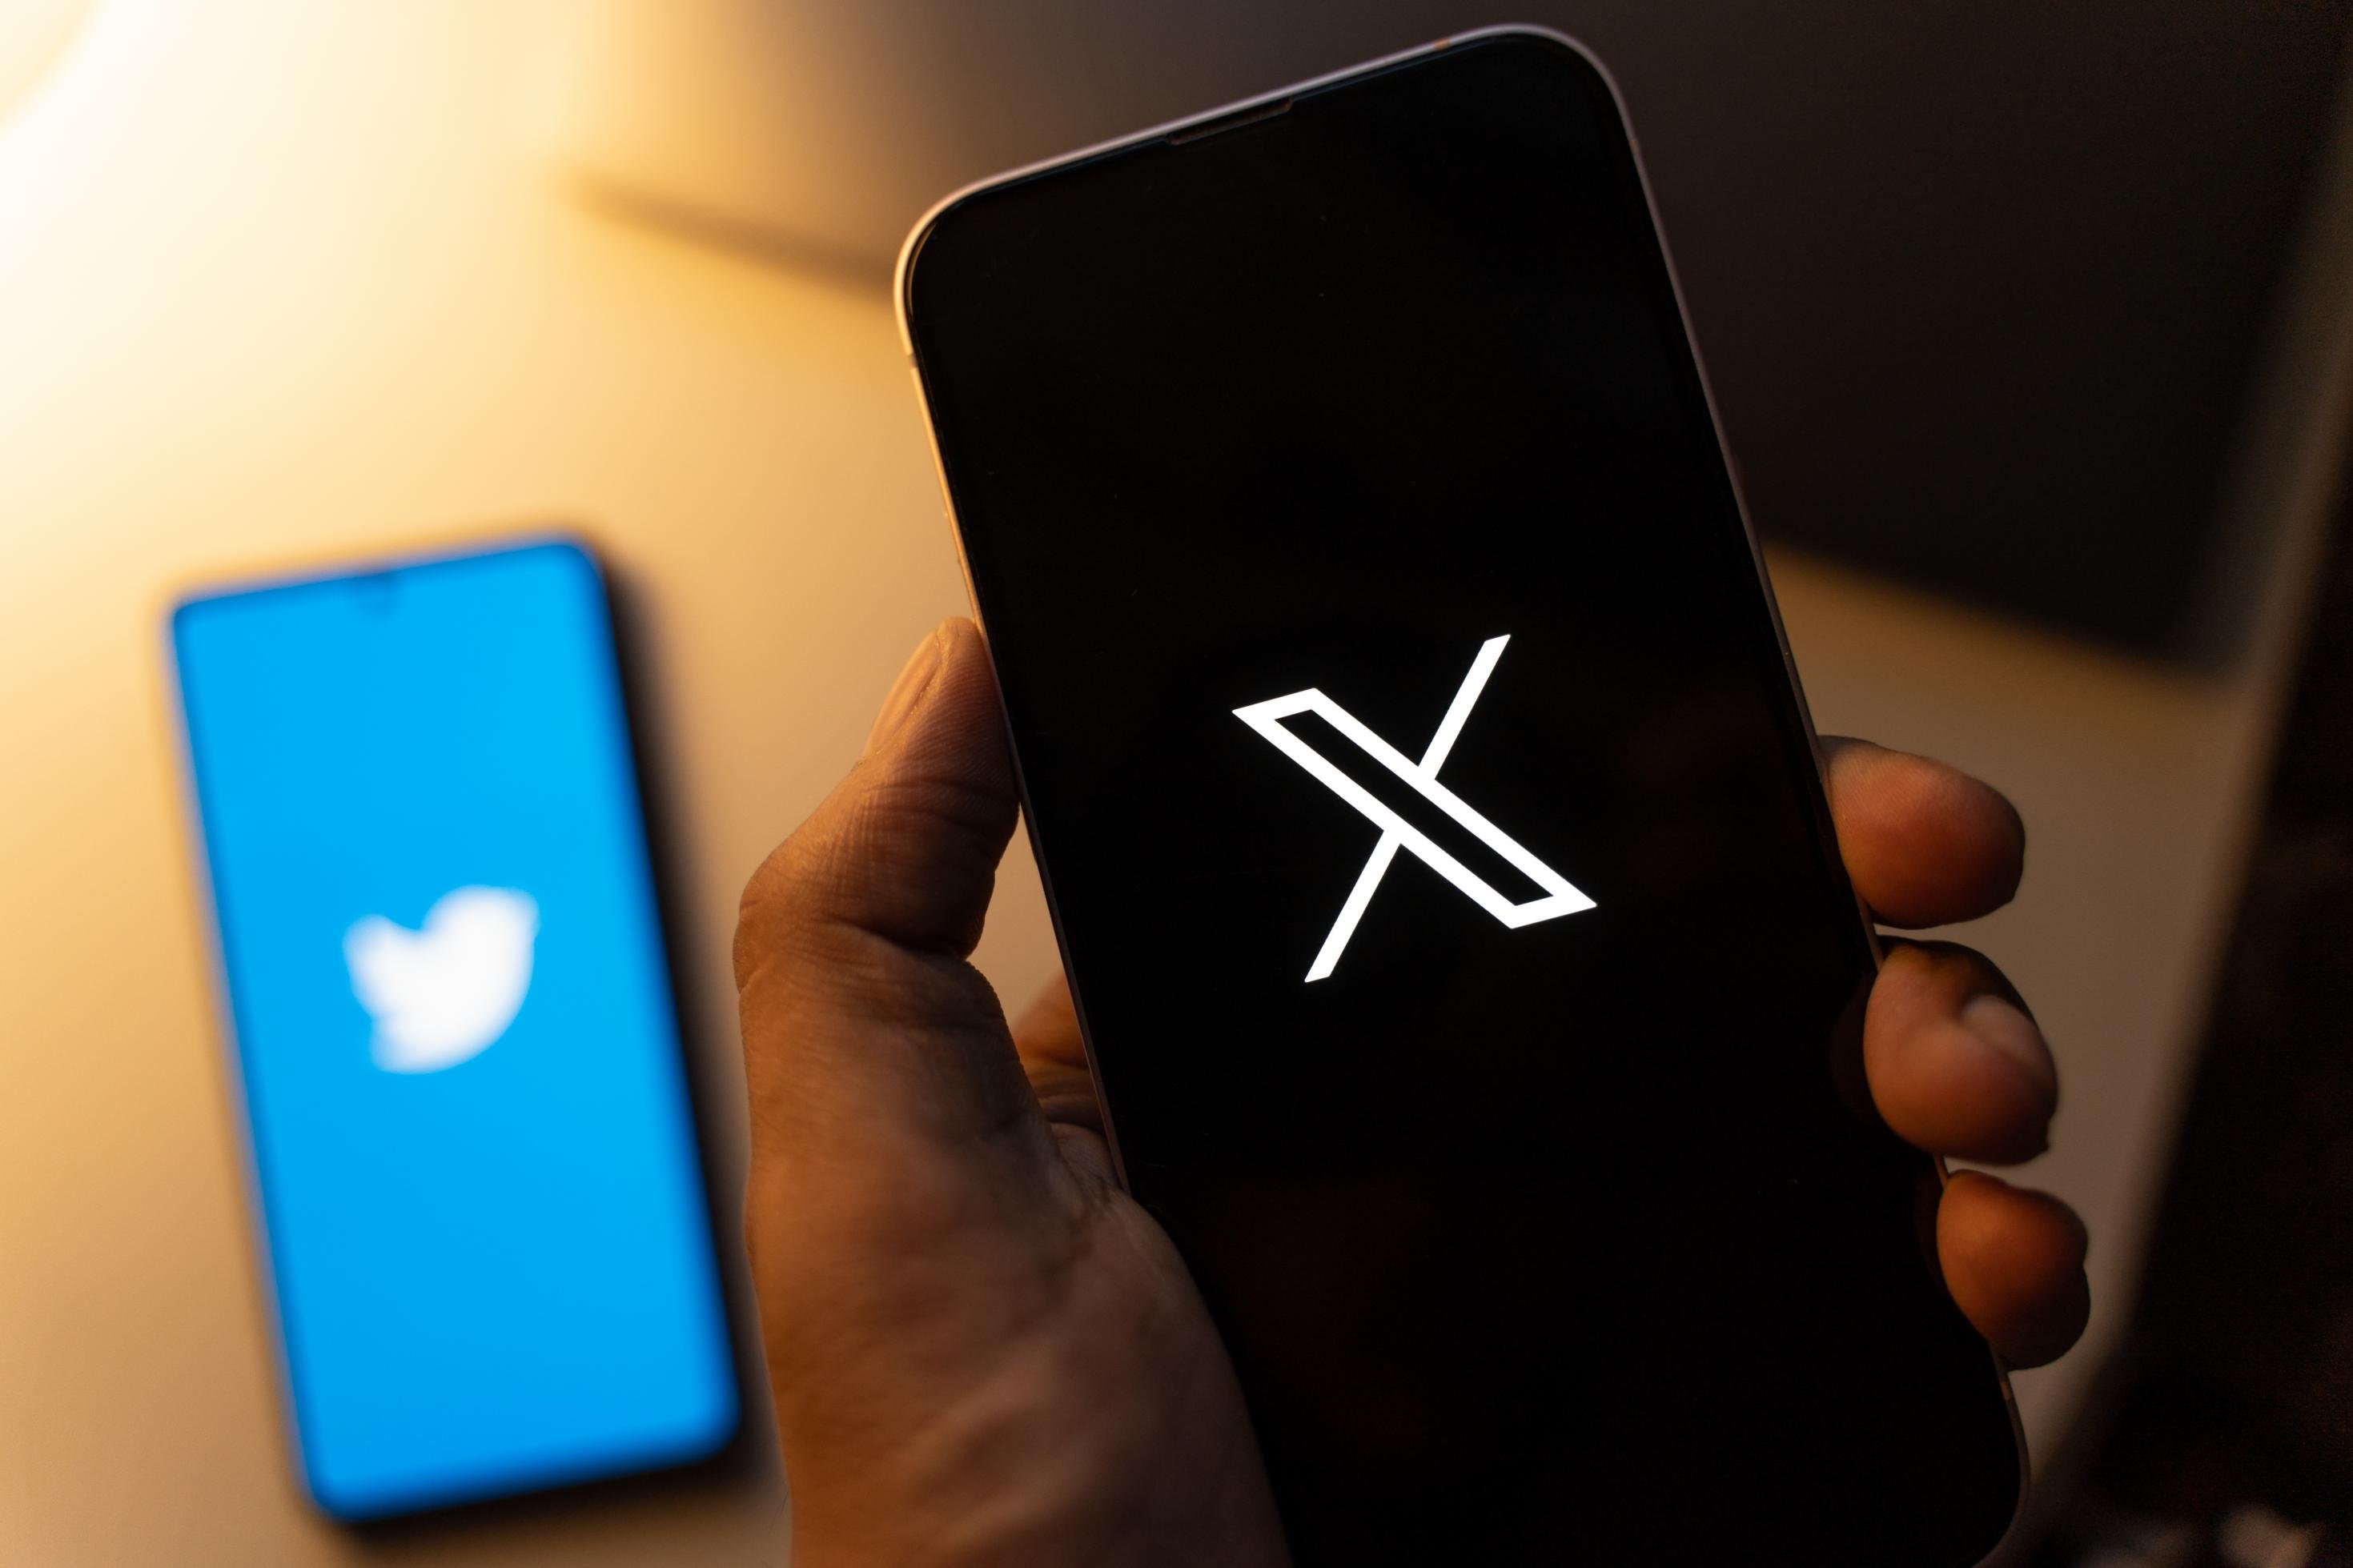 Man sieht eine Hand, die ein Smartphone in der Hand hält mit dem Symbol X. Ein zweites Smartphone liegt auf einem Tisch, dort ist der bekannte Twittervogel auf blauem Hintergrund zu sehen.